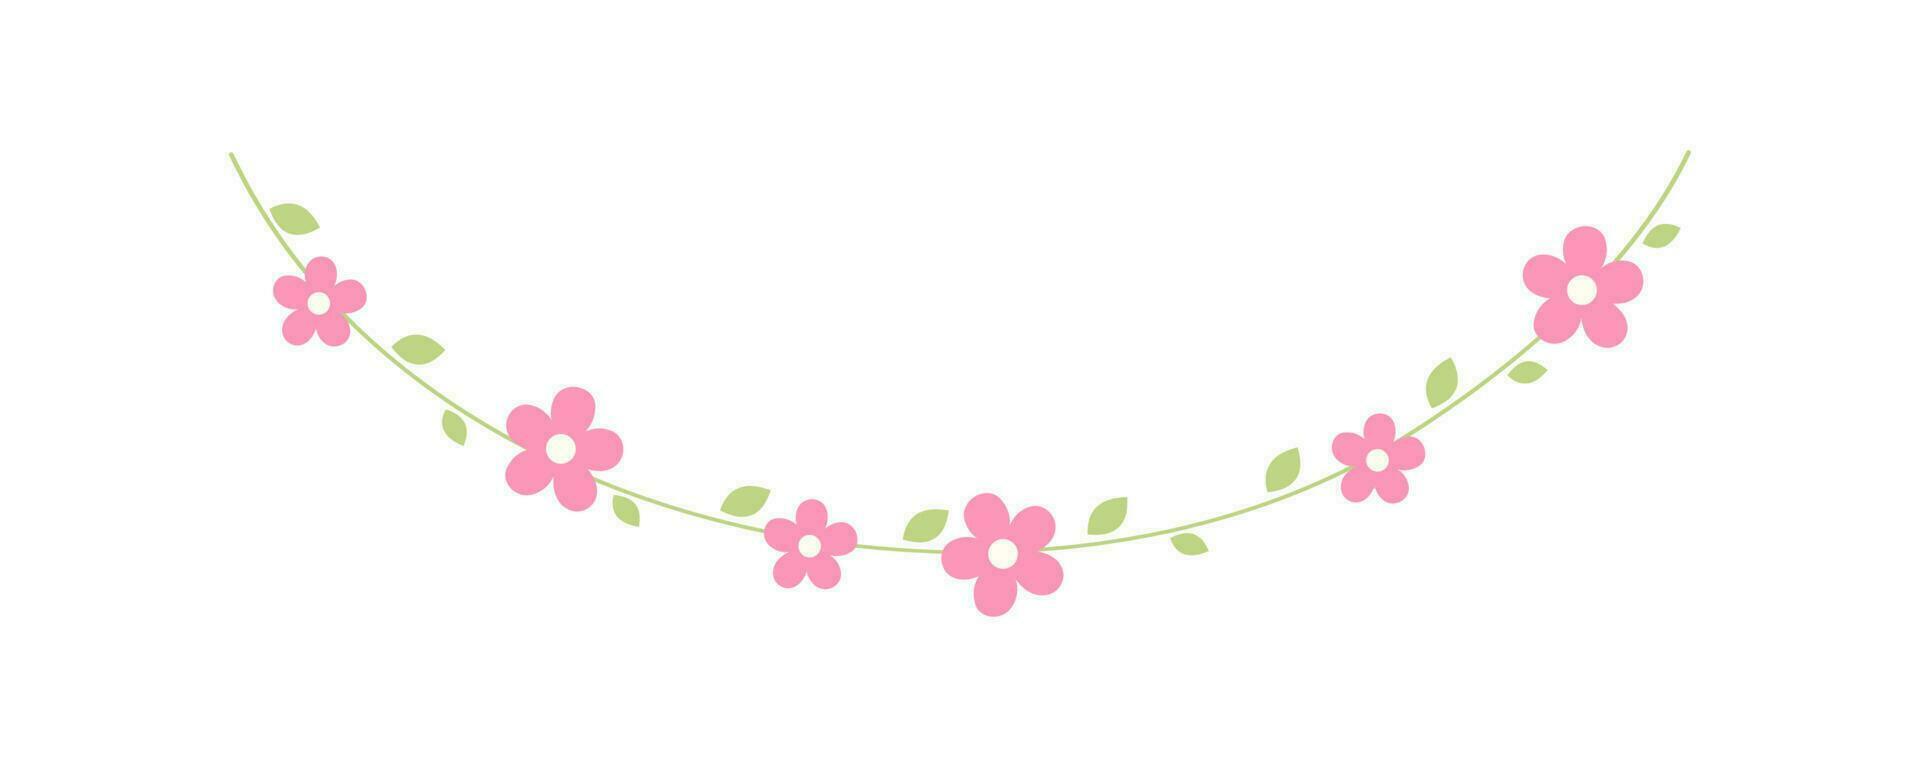 sospeso viti con rosa fiori ghirlanda vettore illustrazione. semplice minimo floreale botanico design elementi per primavera.